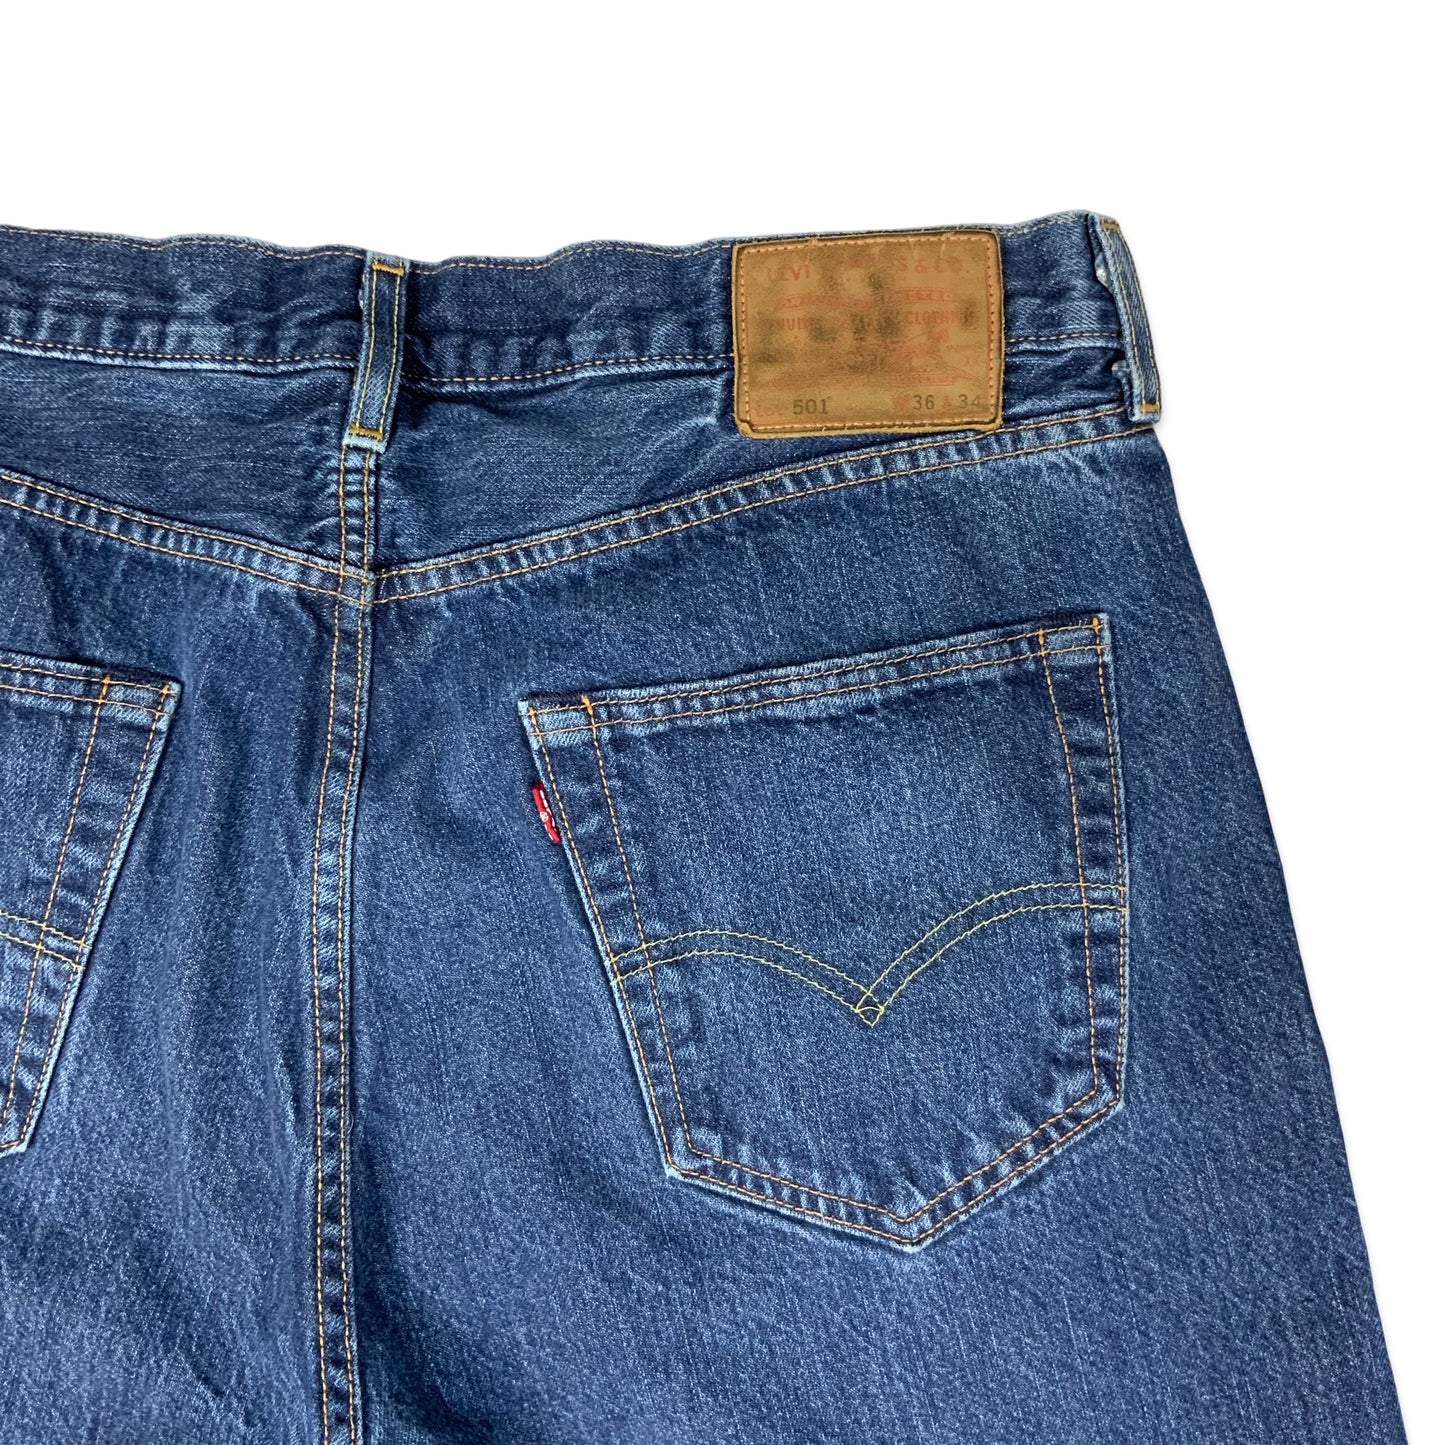 Vintage 501 Levis Dark Denim Jeans W36 L34